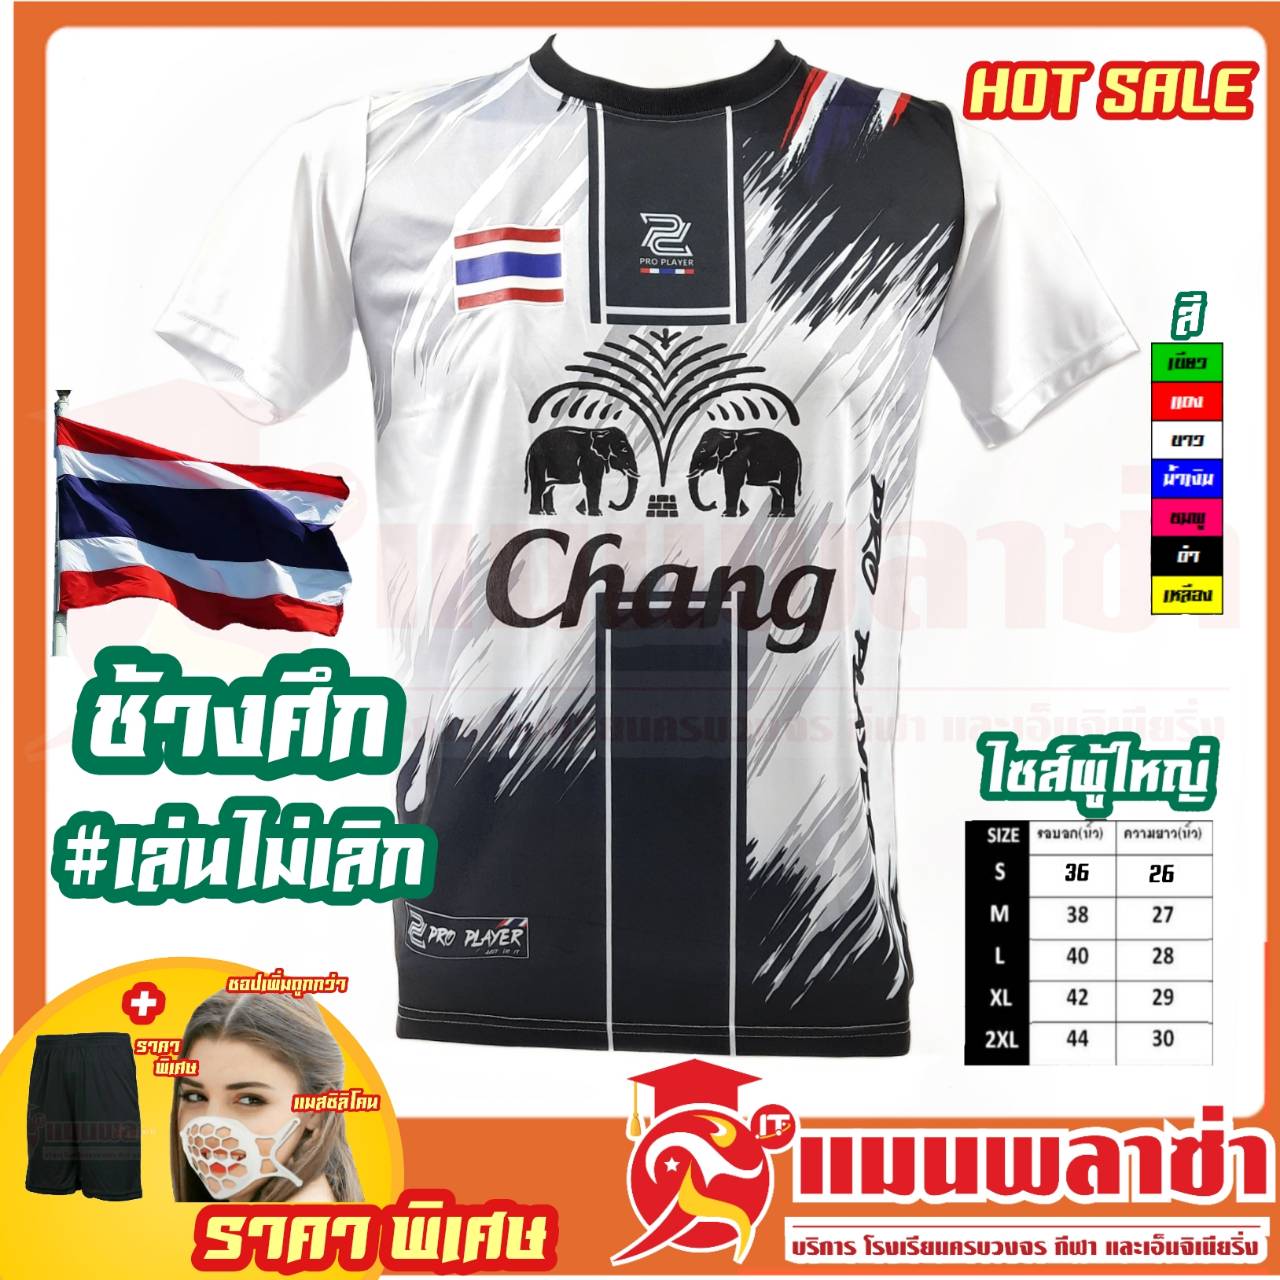 เสื้อกีฬา Pro Player  ราคาพิเศษ  สกรีน ธงชาติ ช้างศึกเล่นไม่เลิก ทีมชาติไทย